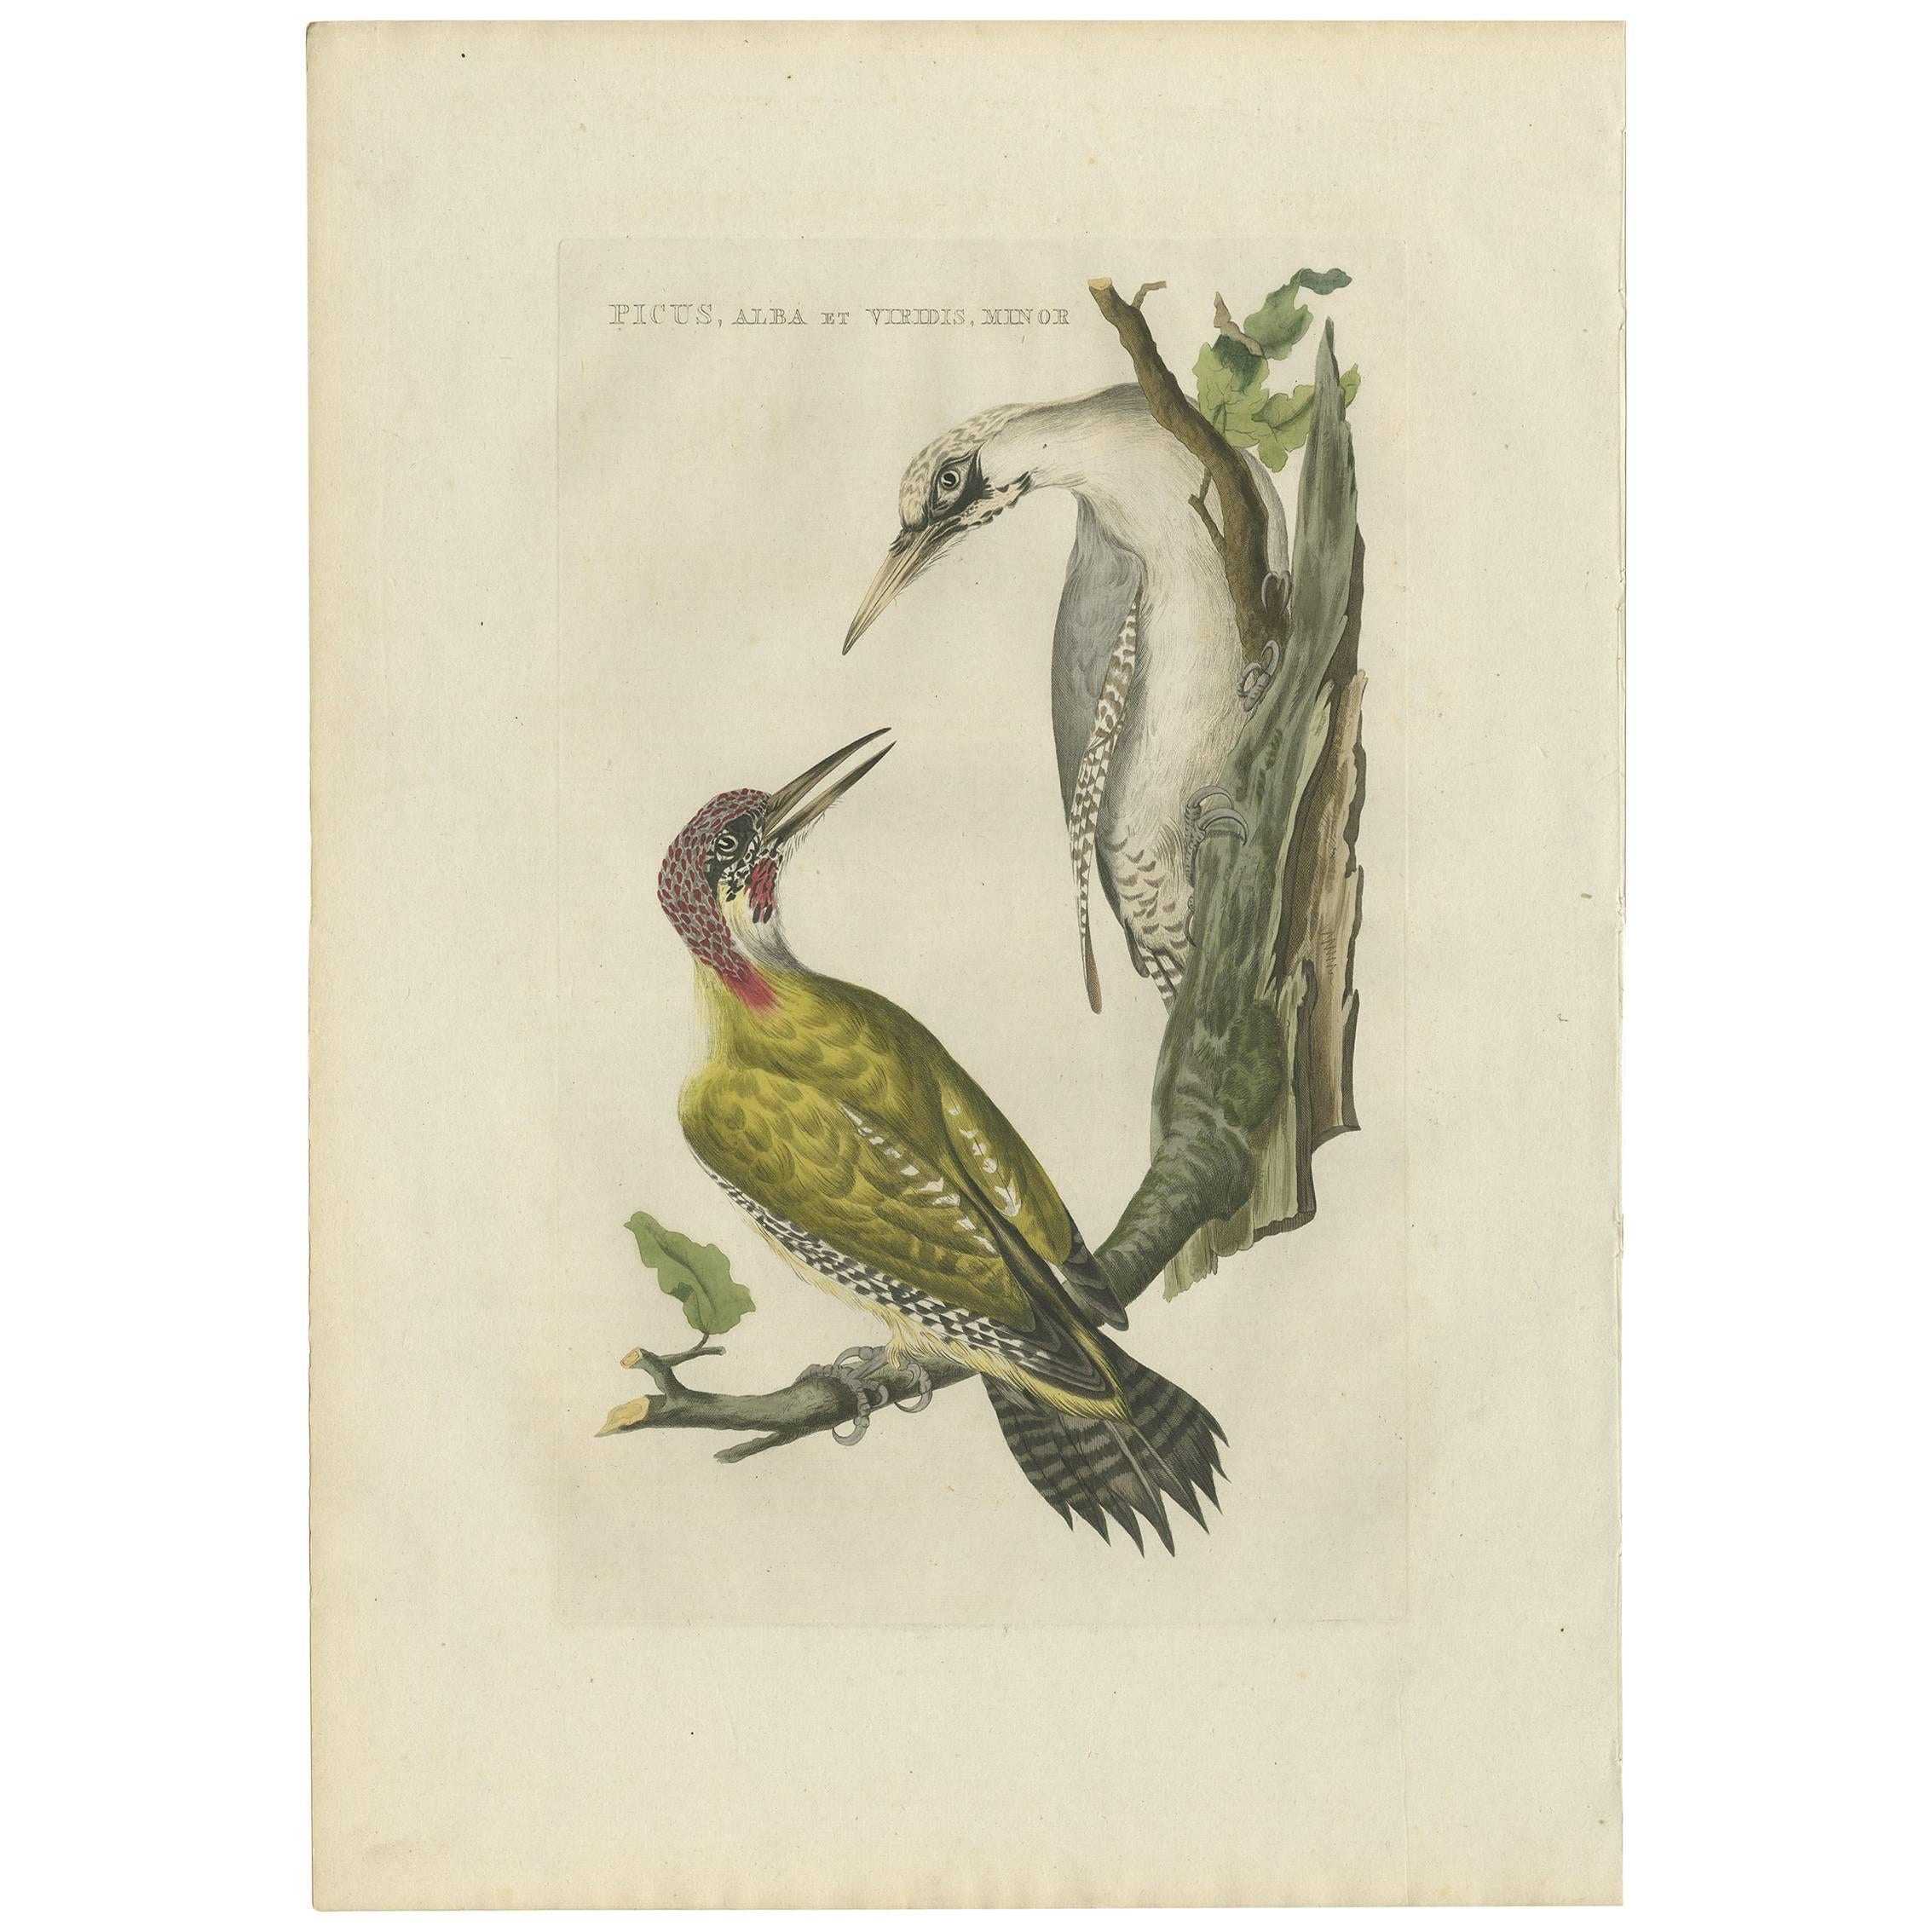 Antique Bird Print of the Green Woodpecker by Sepp & Nozeman, 1809